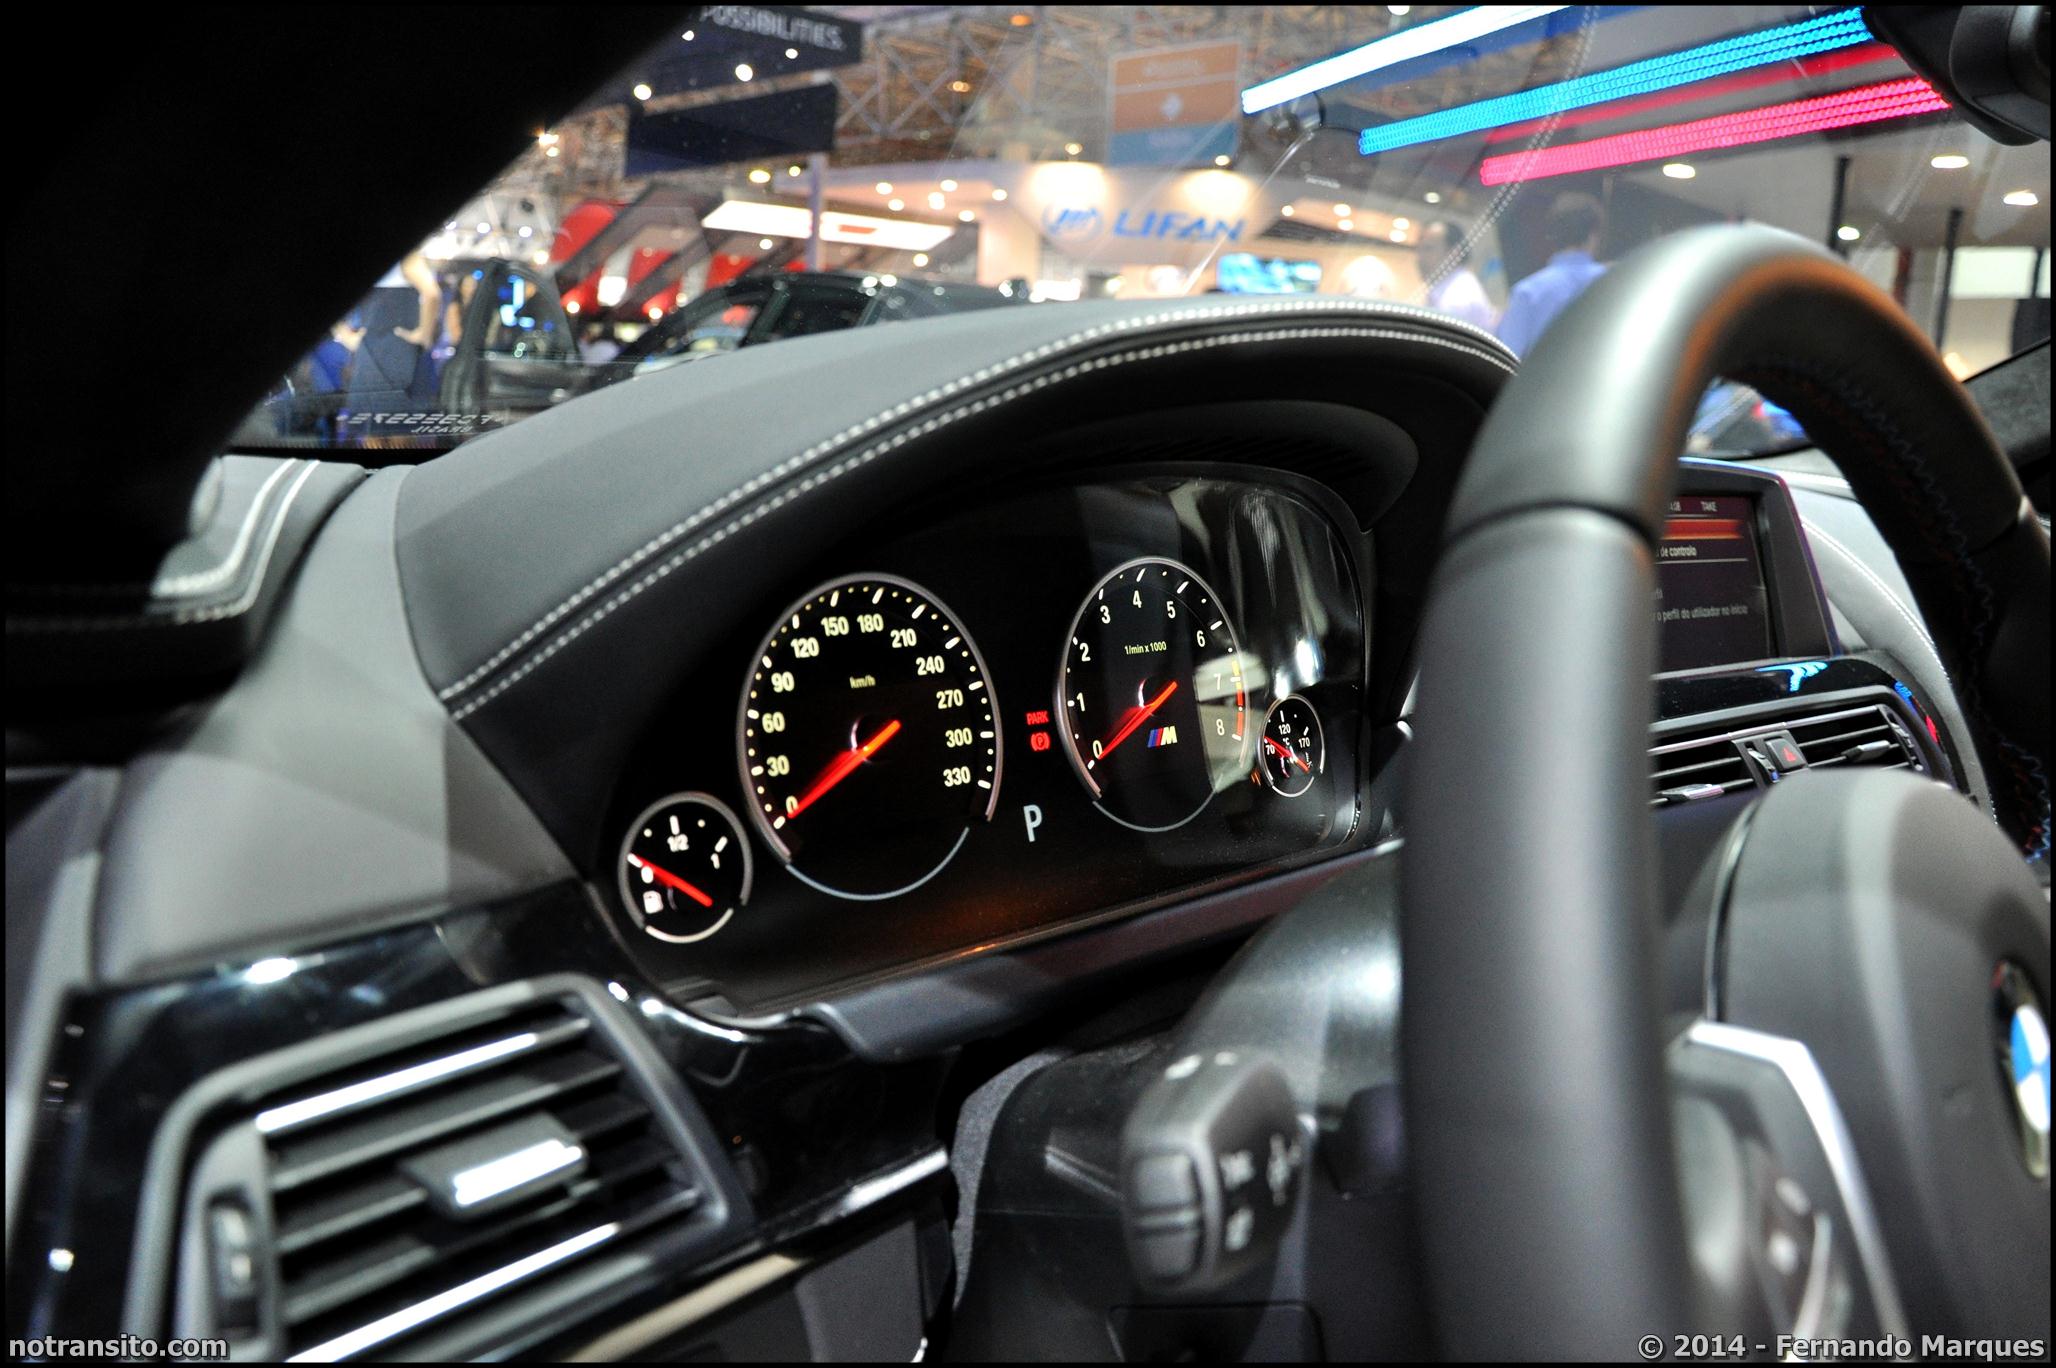 BMW M6 Gran Coupé Frozen Grey Salão do Automóvel 2014